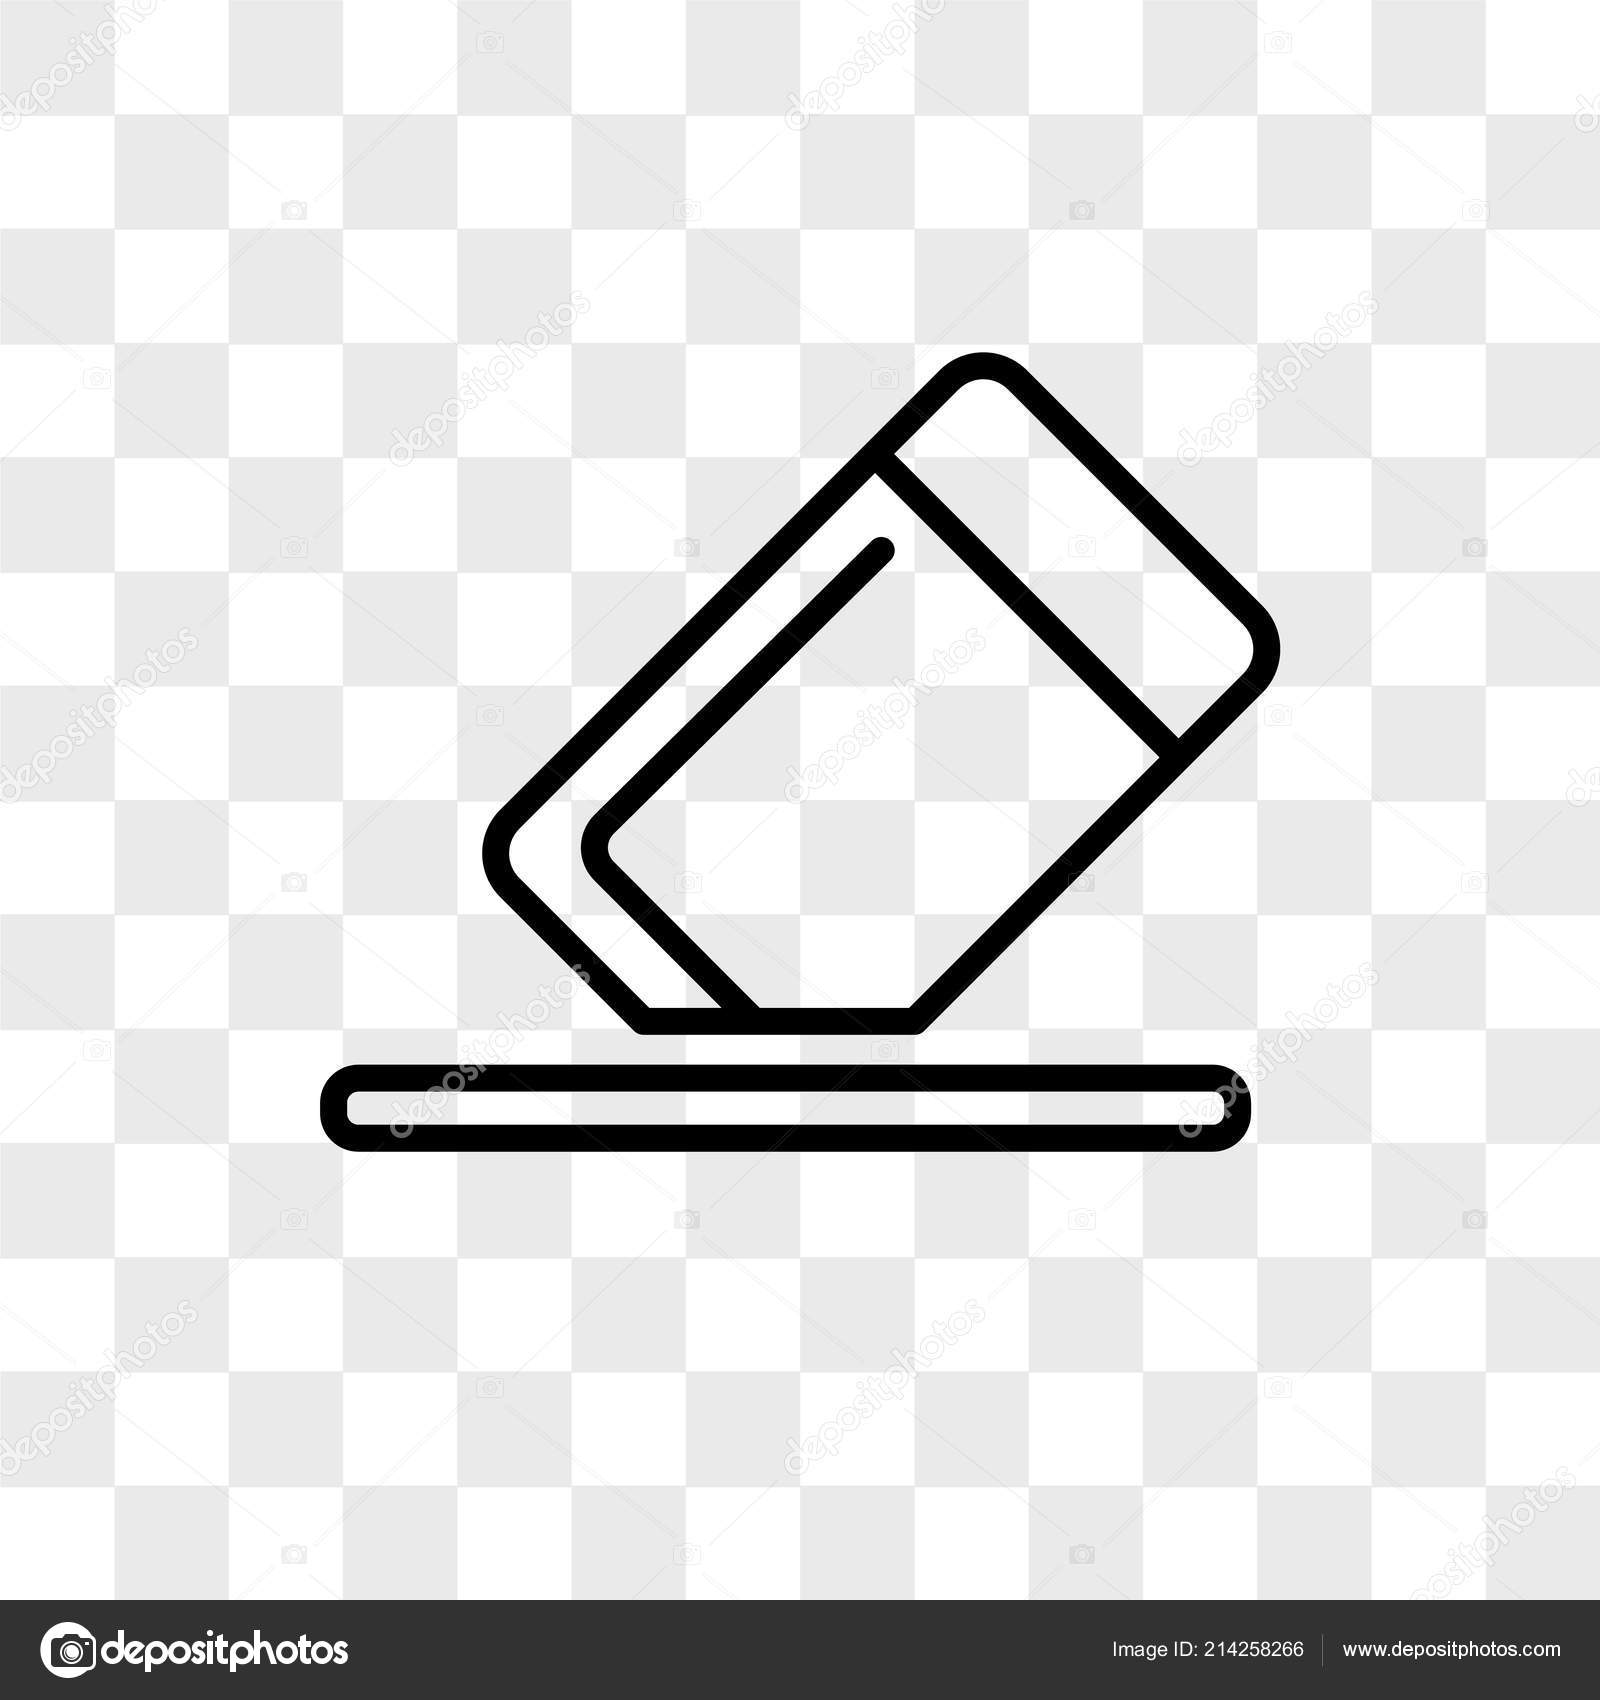 Icon xoá được cách ly trên nền trong suốt, logo Background Eraser: Với một logo tinh tế với biểu tượng xoá được cách ly trên nền trong suốt, Background Eraser sẽ khiến bạn dễ dàng nhận biết và sử dụng ứng dụng như một chuyên viên thiết kế chuyên nghiệp. Hãy tải xuống để sử dụng và trải nghiệm.